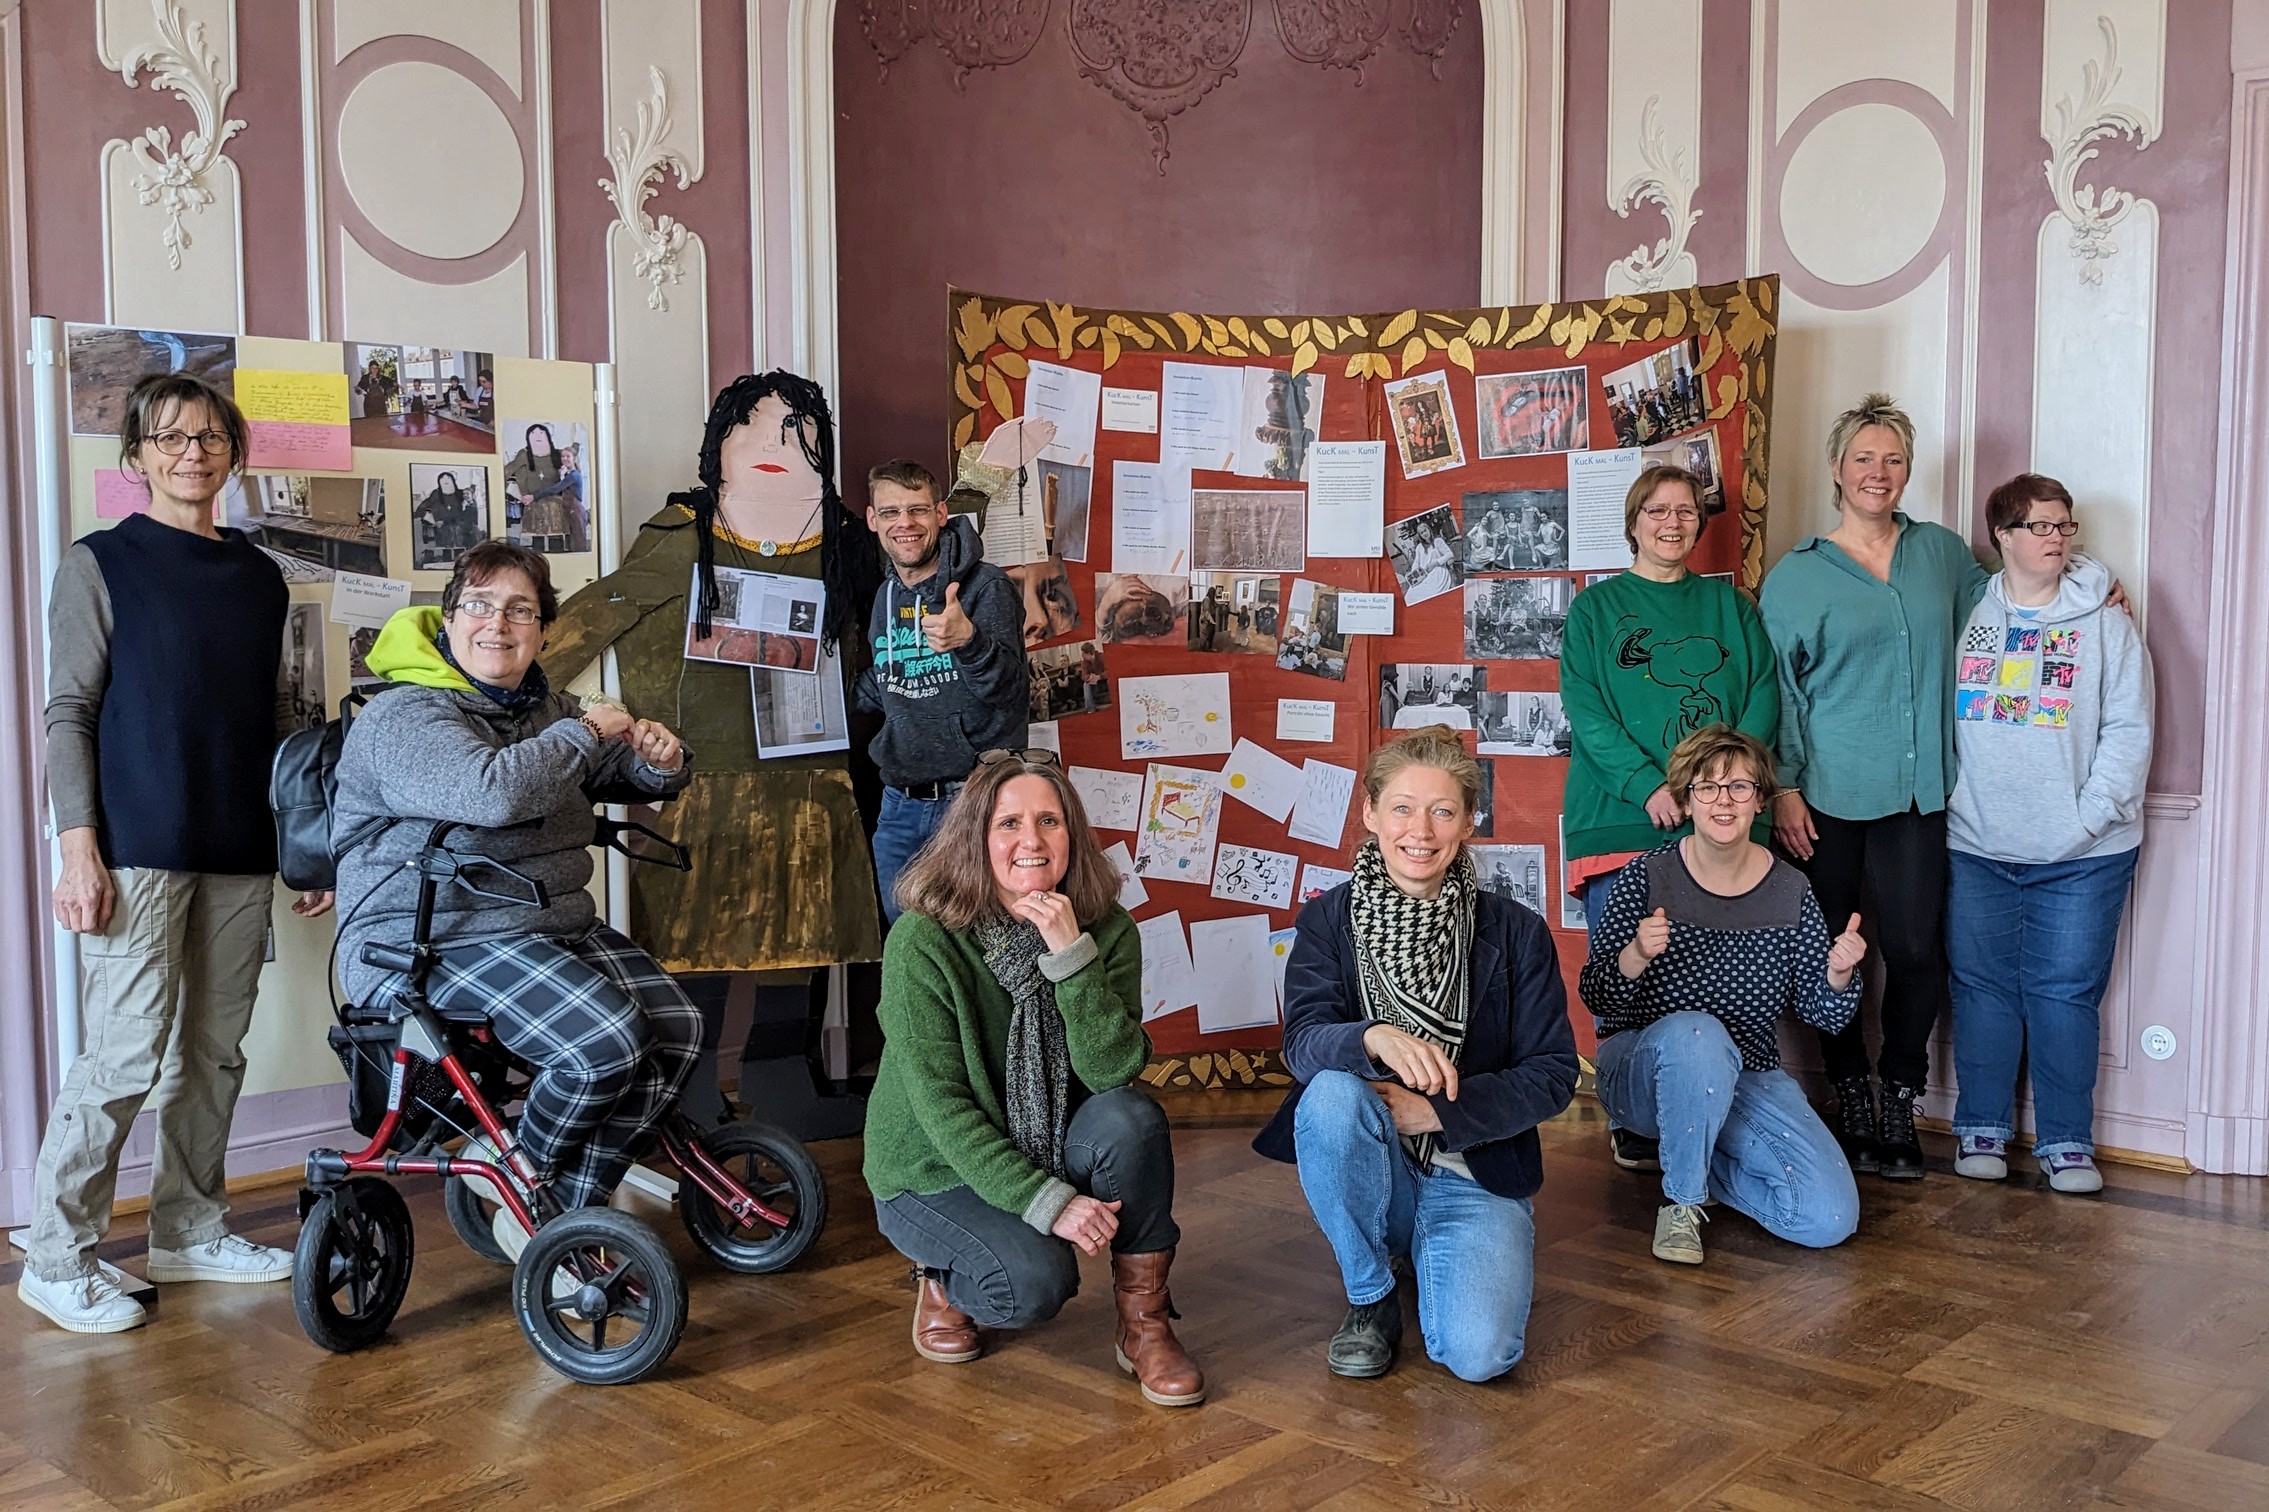 Gruppenfoto mit Teilnehmer*innen eines inklusiven Workshops vor ihrer selbstgemachten Fotowand im Museum.